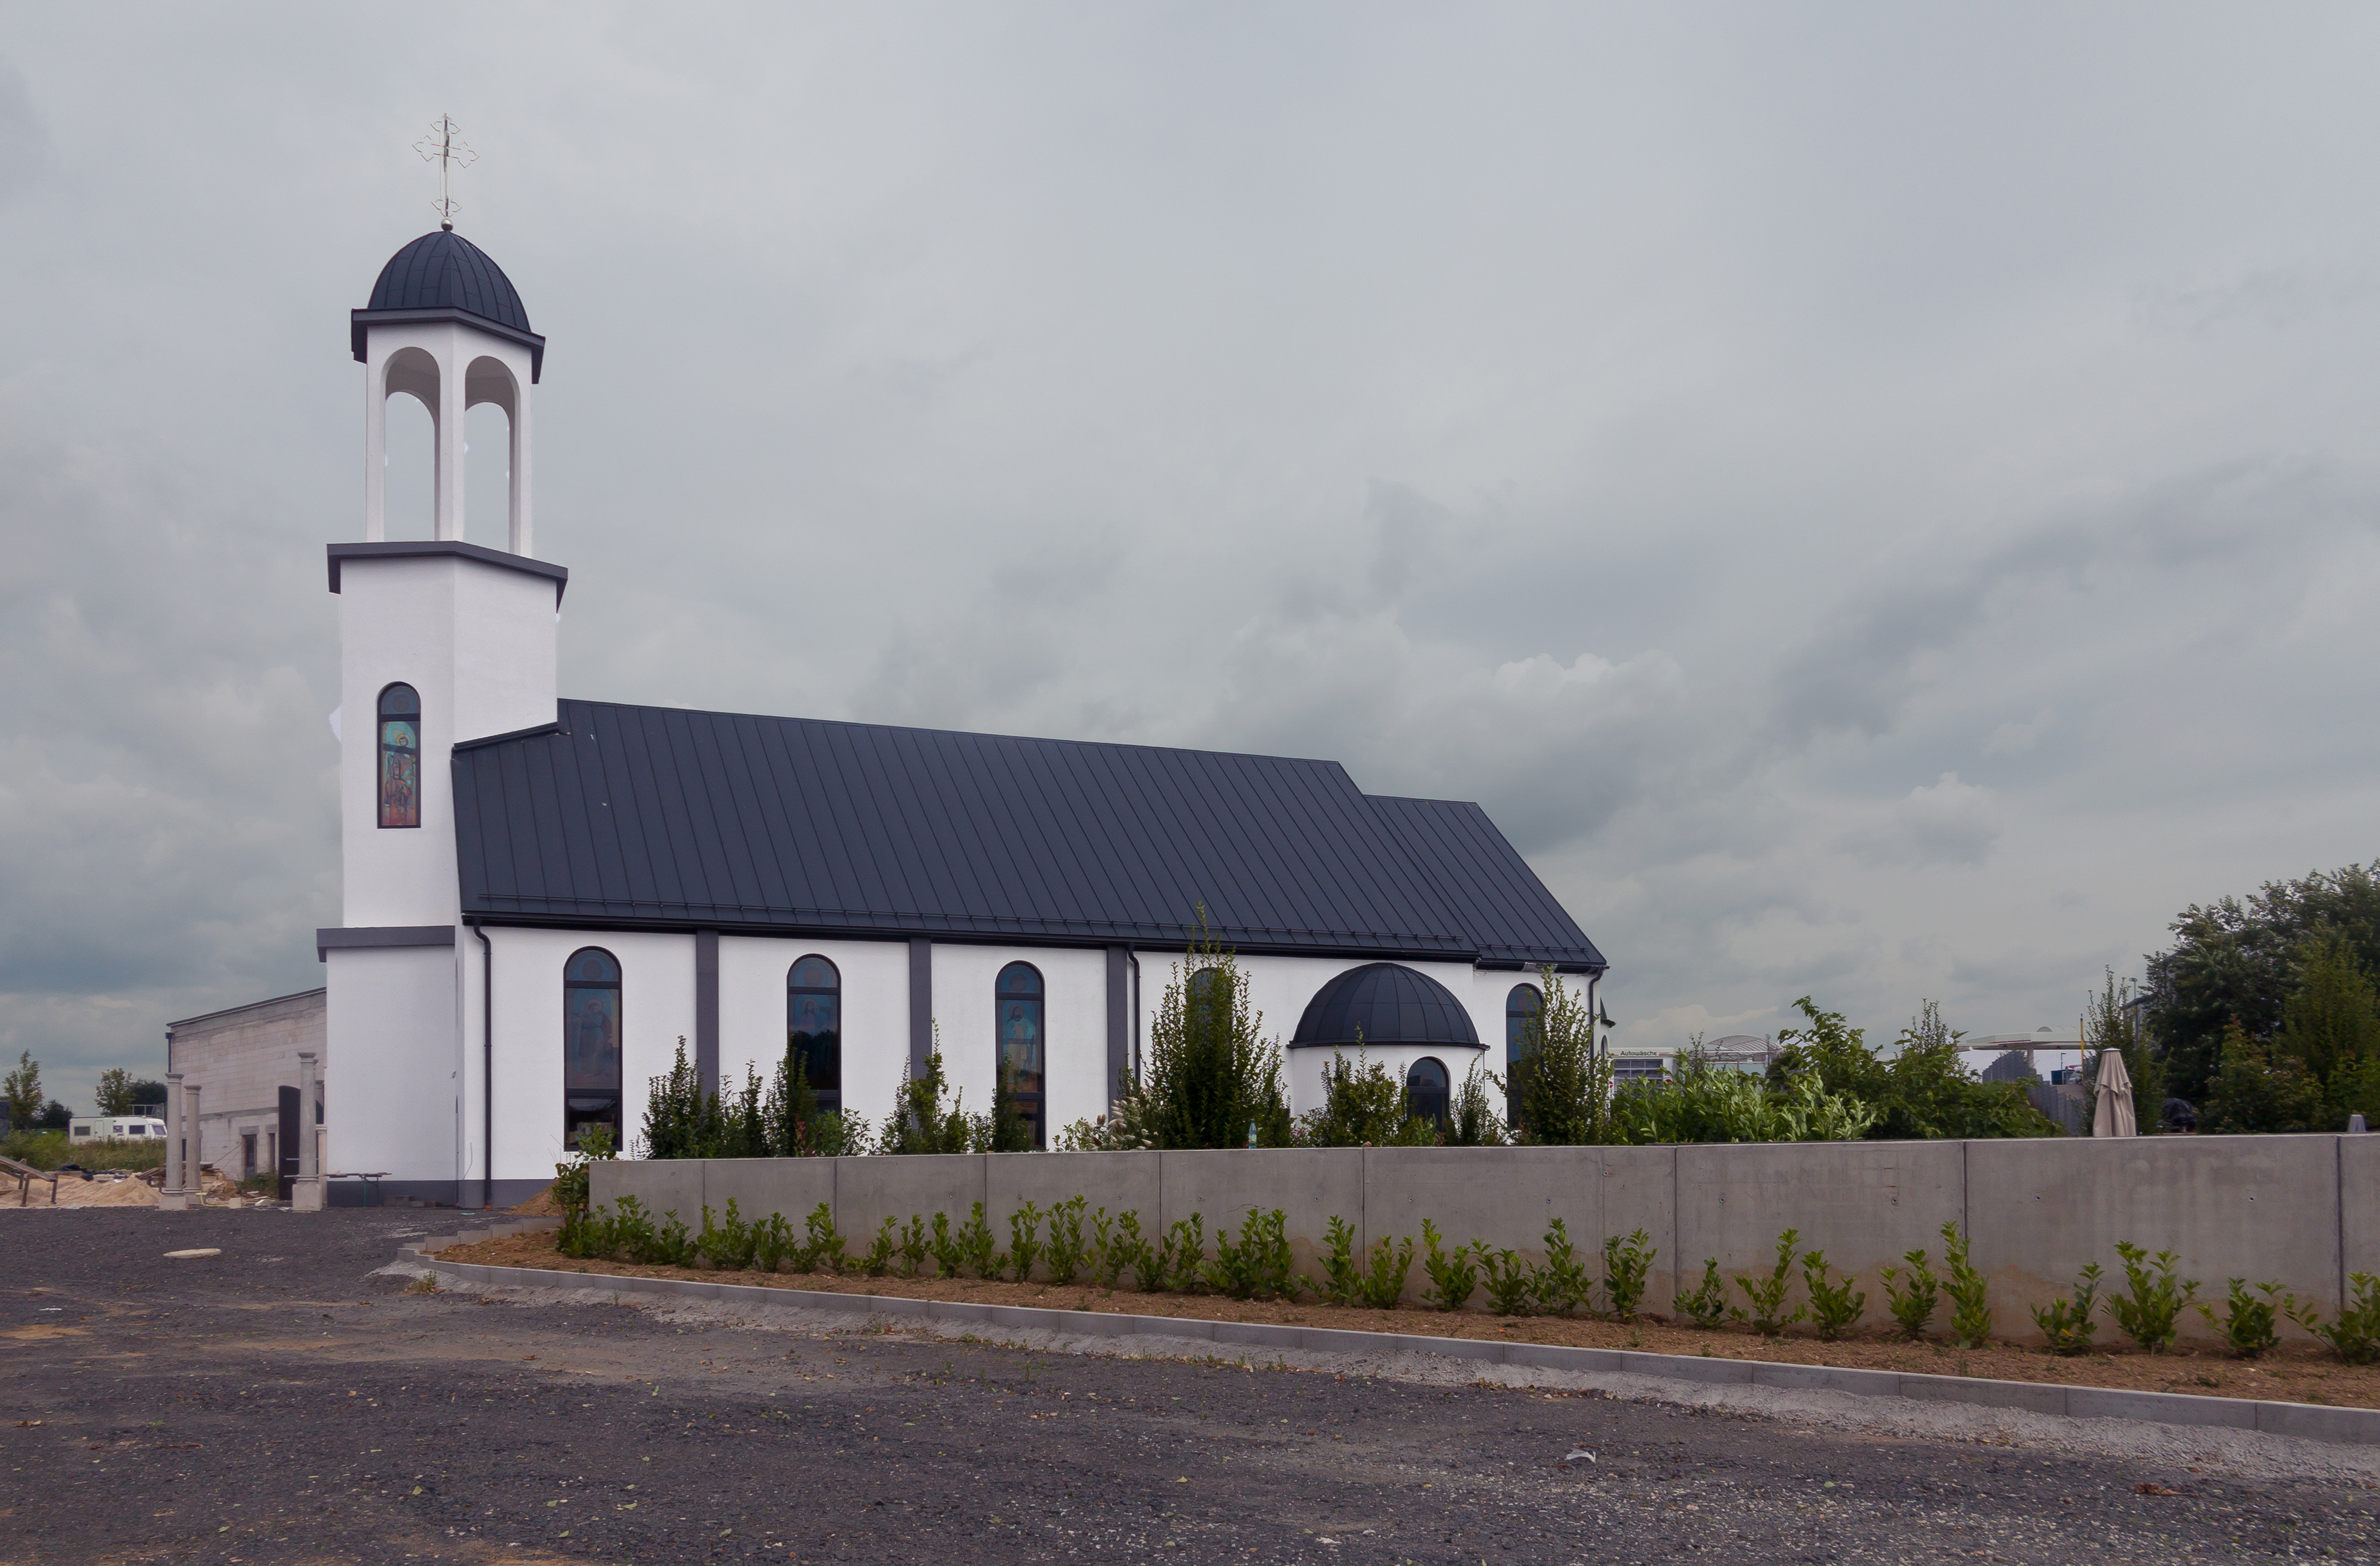 Massenheim, een nieuwe kerk foto8 2016-08-11 12.30